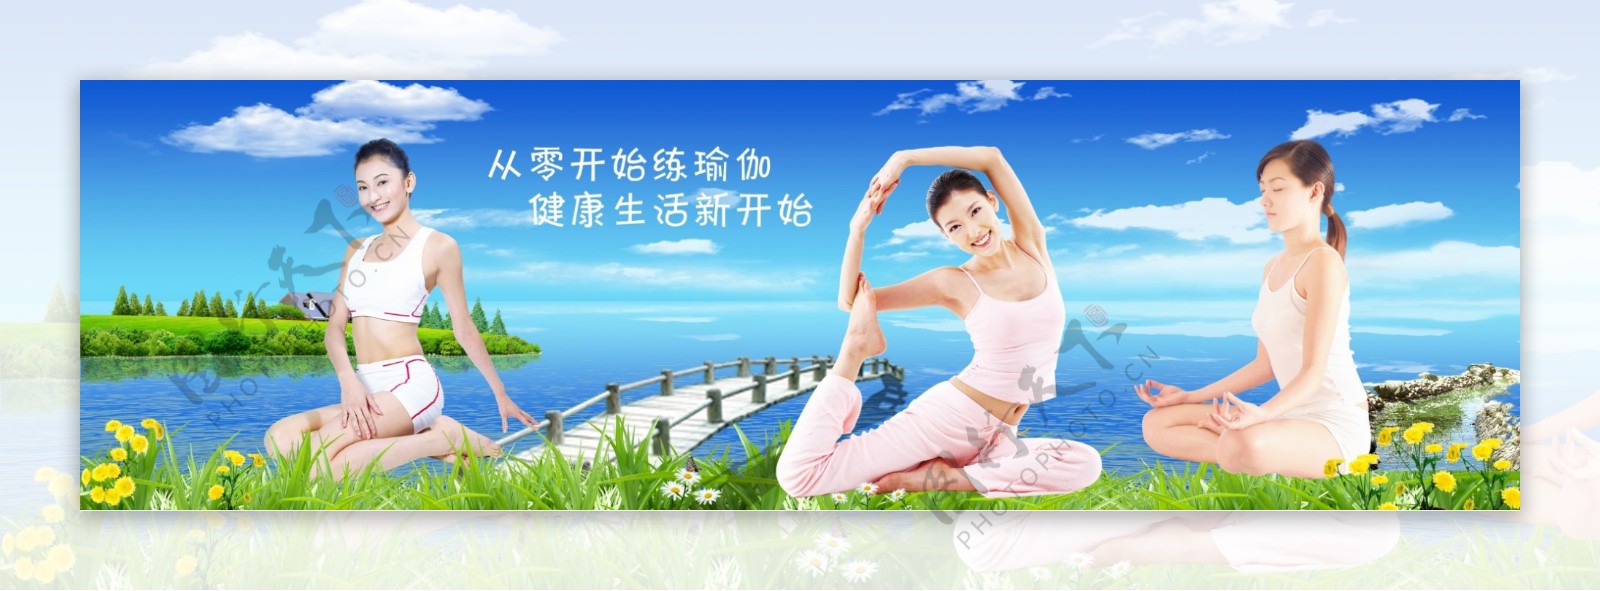 瑜伽广告牌图片